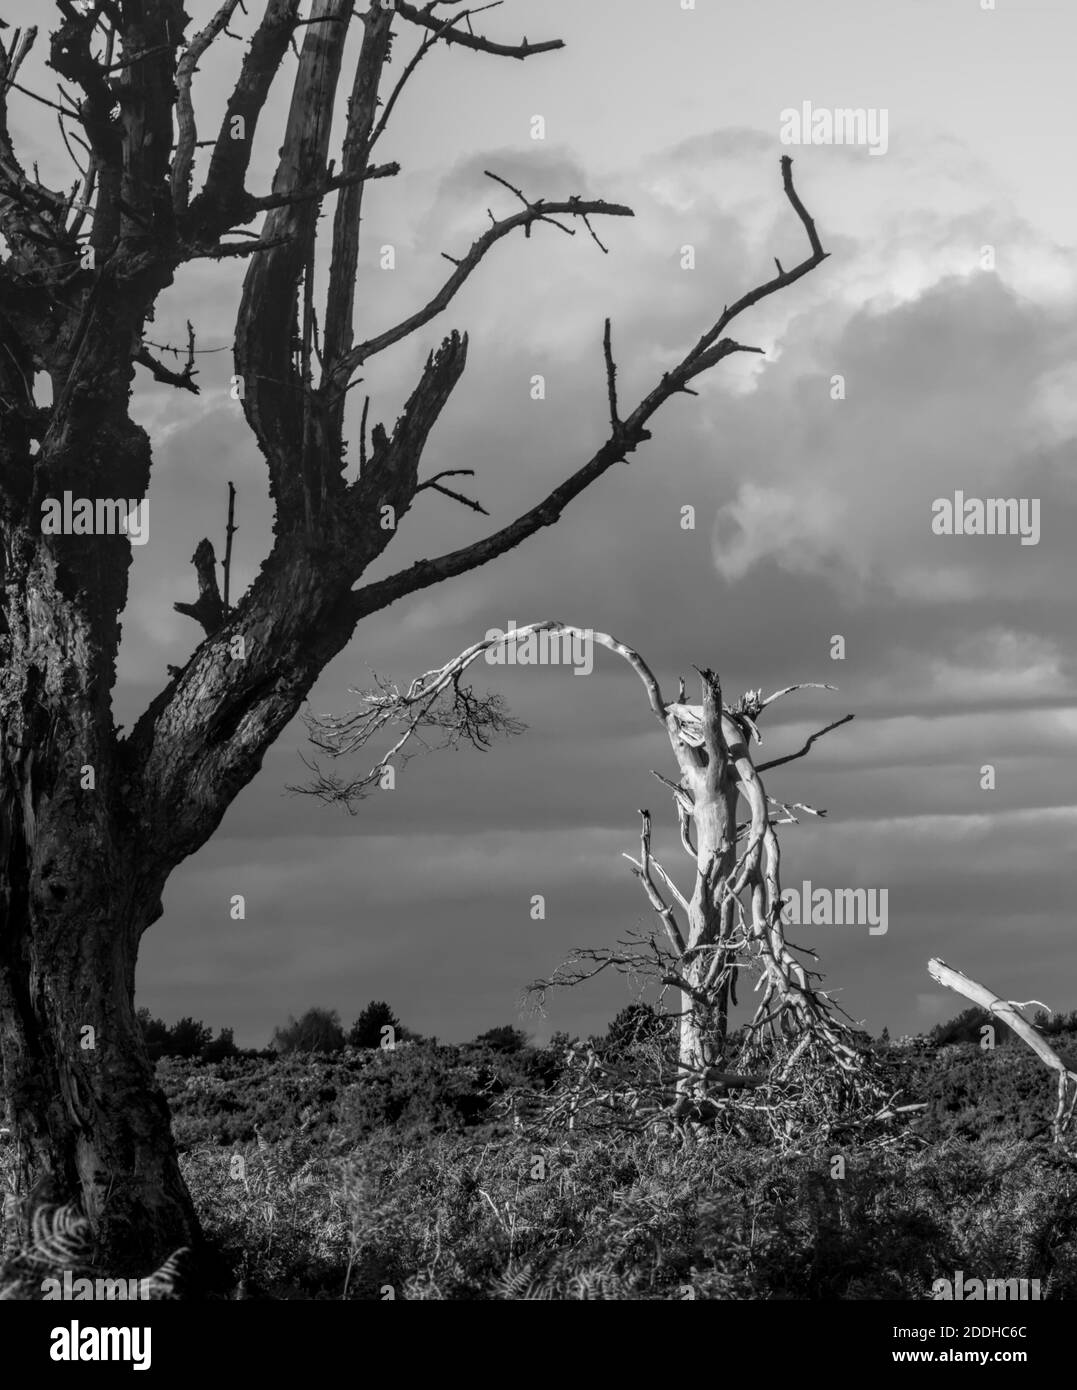 Un par de árboles viejos, moribundos, muertos, uno oscuro y uno blanco que se encuentran solos en el paisaje frente A un cielo tormentos. Monocromo, blanco y negro. Tomado Foto de stock